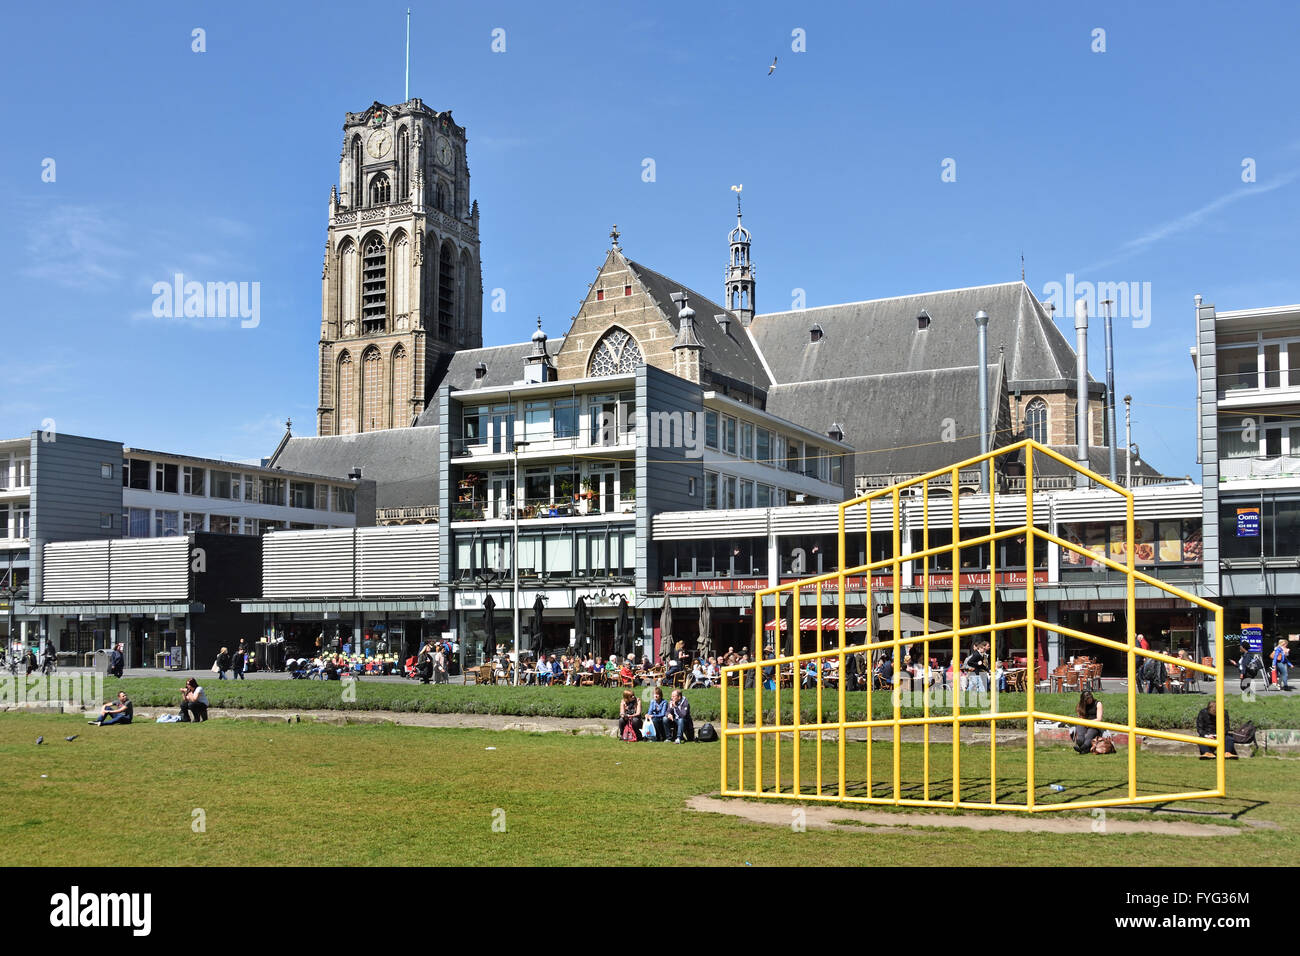 Restaurantes y cafés de la zona peatonal, en el Rotterdam Blaak Hoogstraat cerca de los Países Bajos frente a Market Hall (Markthal) Foto de stock